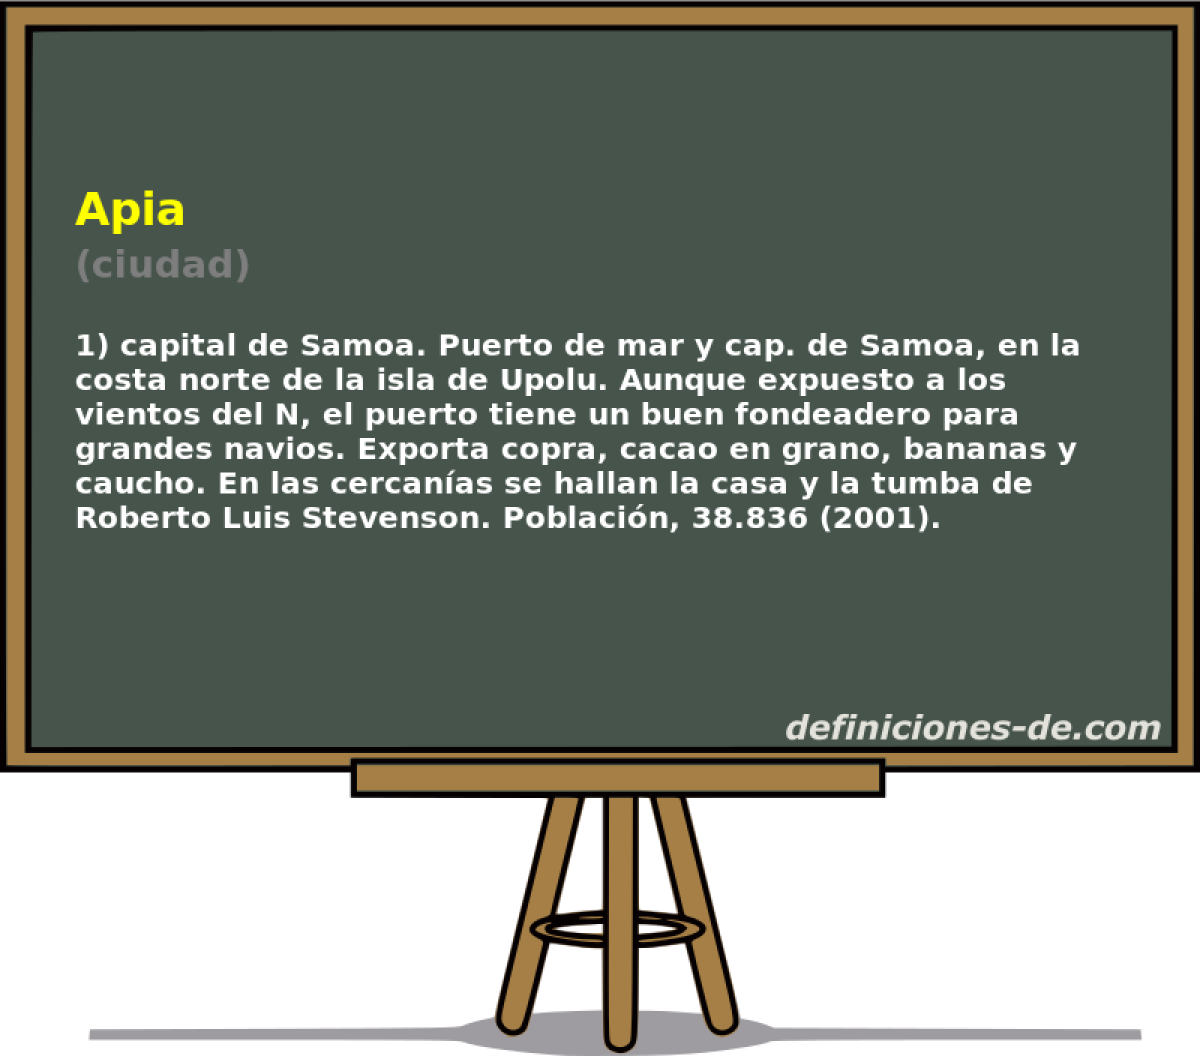 Apia (ciudad)